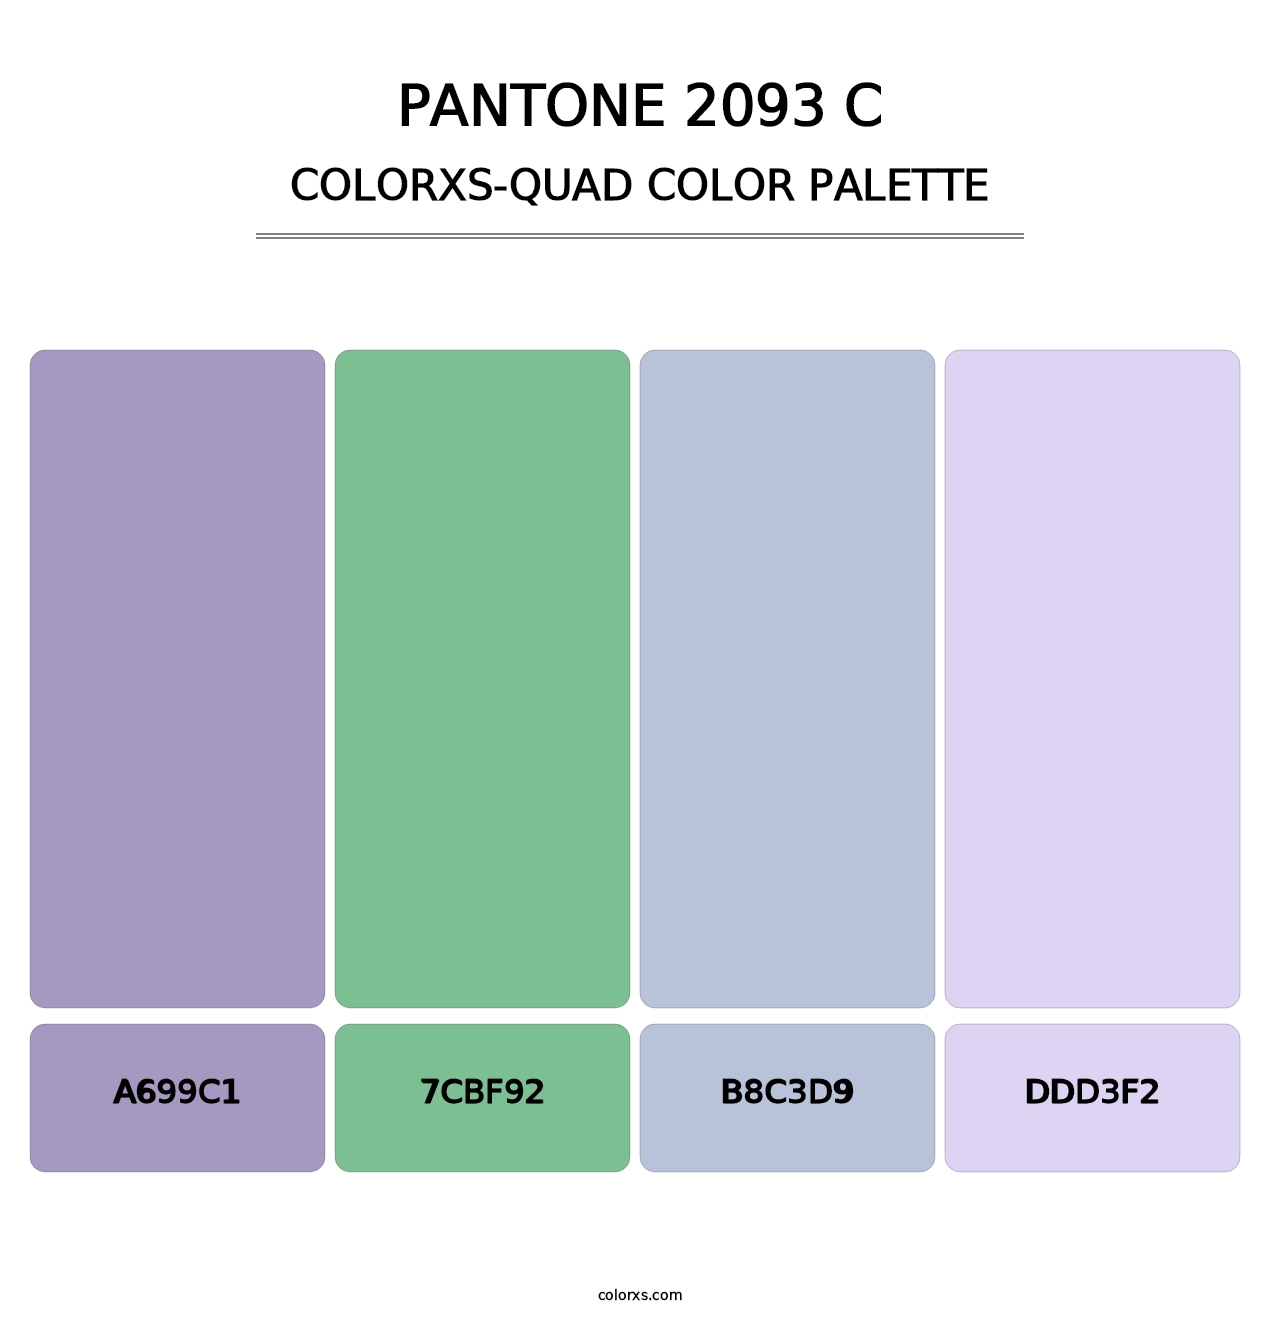 PANTONE 2093 C - Colorxs Quad Palette